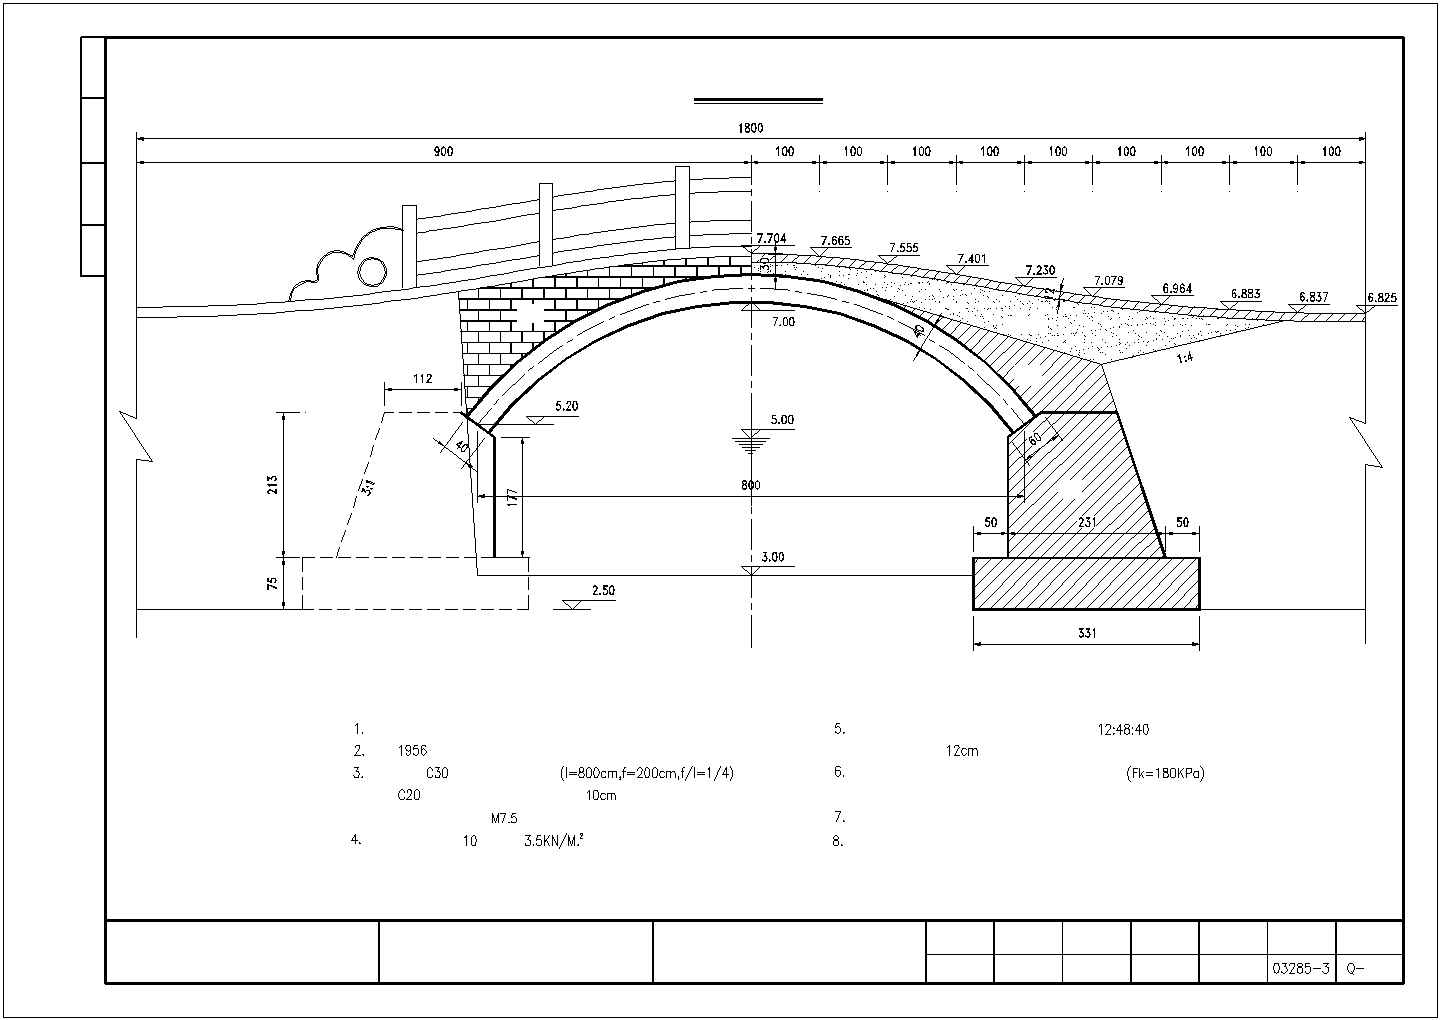 1-8m钢筋混凝土板拱桥设计图(9张)